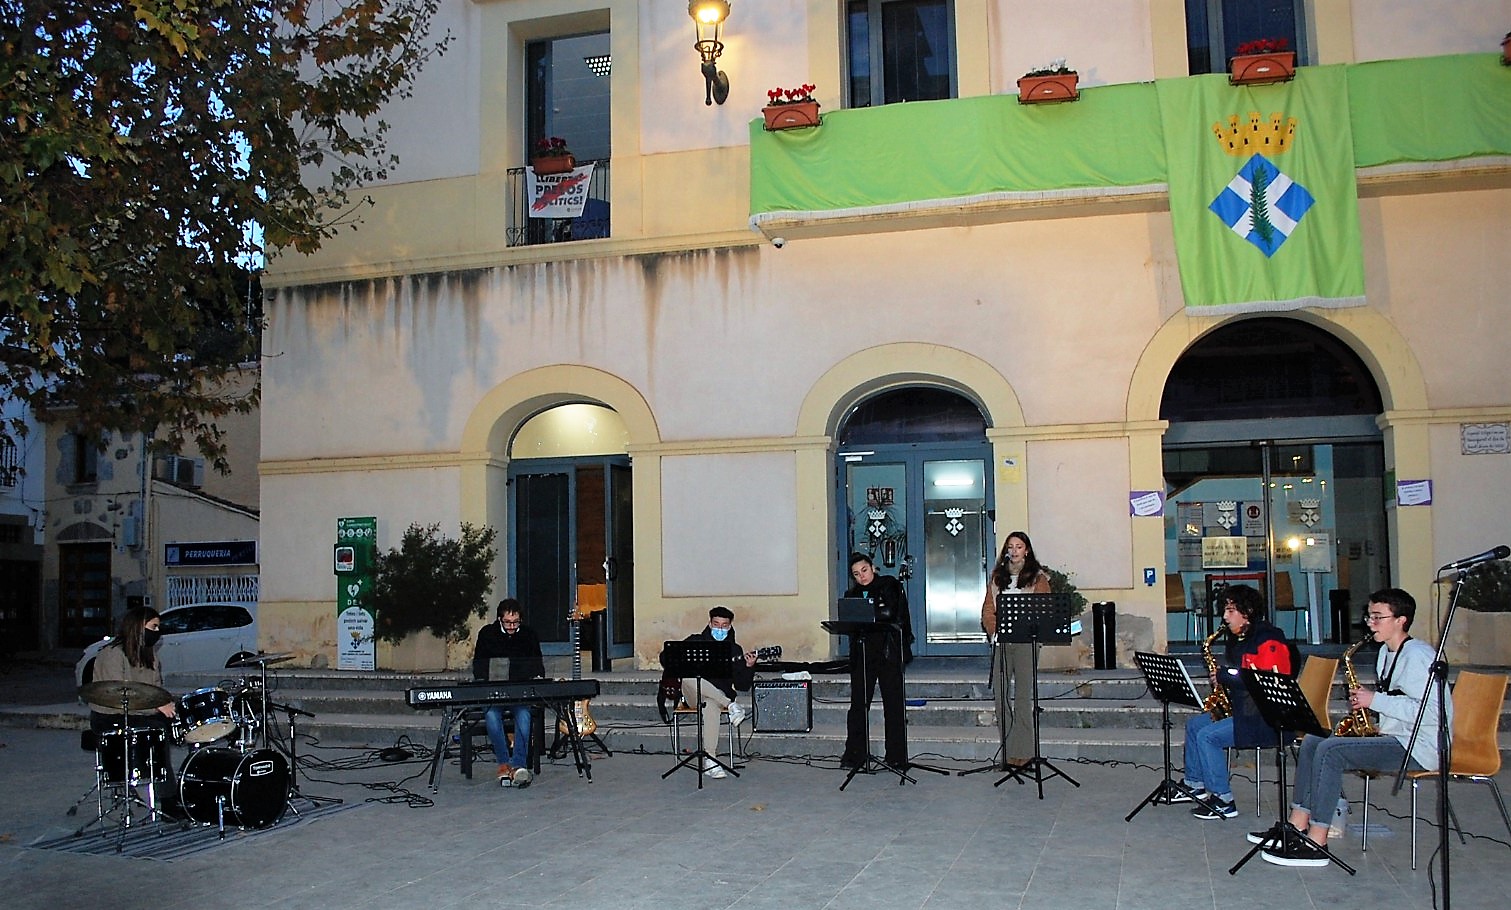 Encesa de l'arbre de Nadal amb l'Escola Municipal de Msica Llavaneres, diumenge 28 de novembre